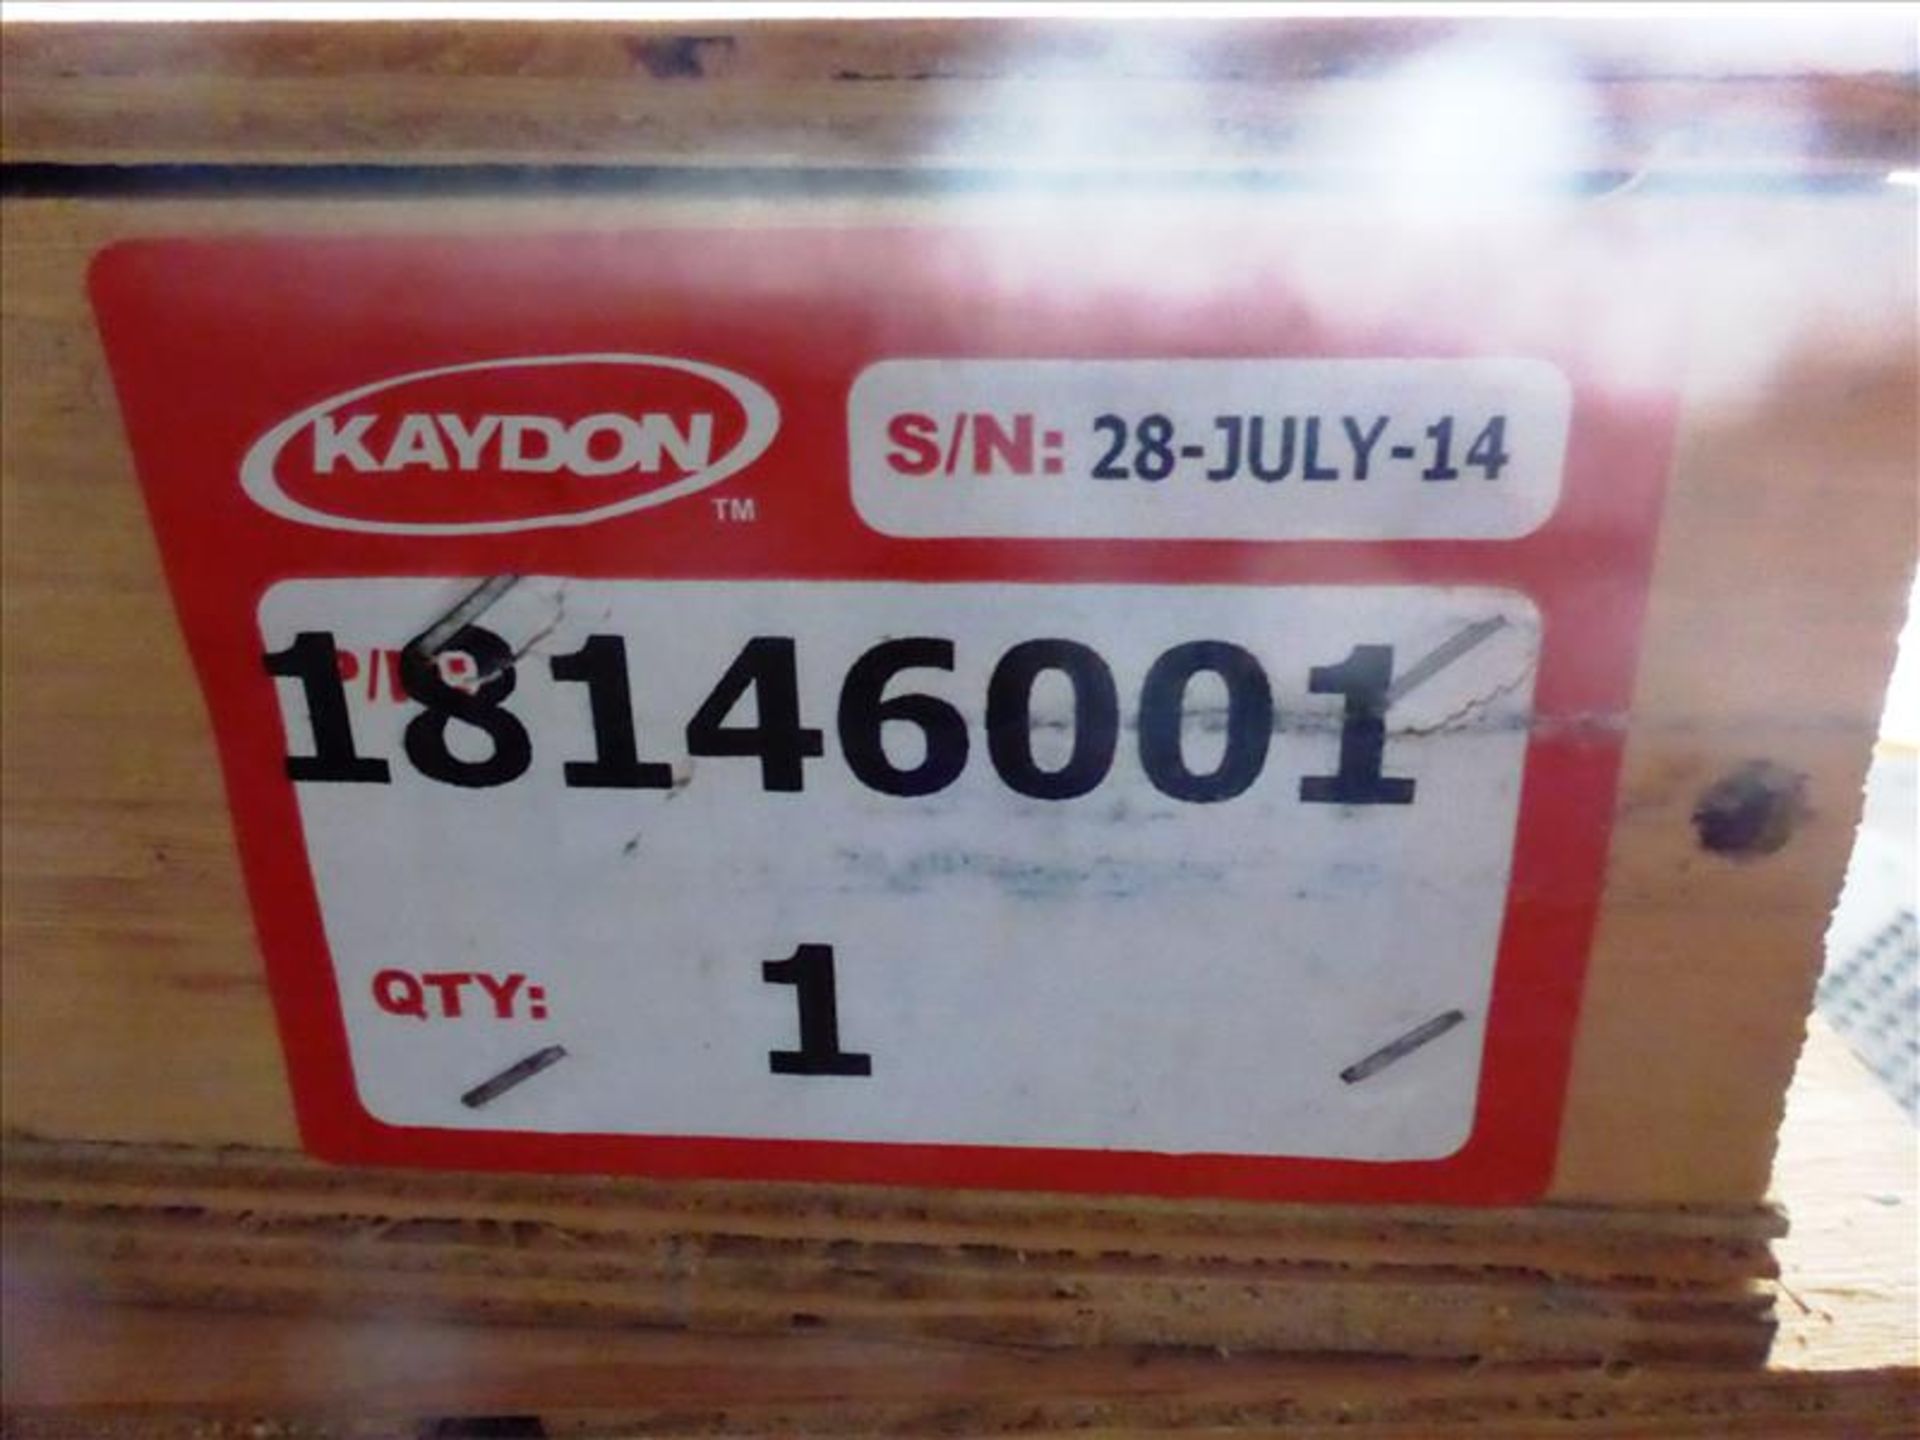 (5) Kaydon bearings, part no. 18146001 (Tag No. 1306) - Image 4 of 5